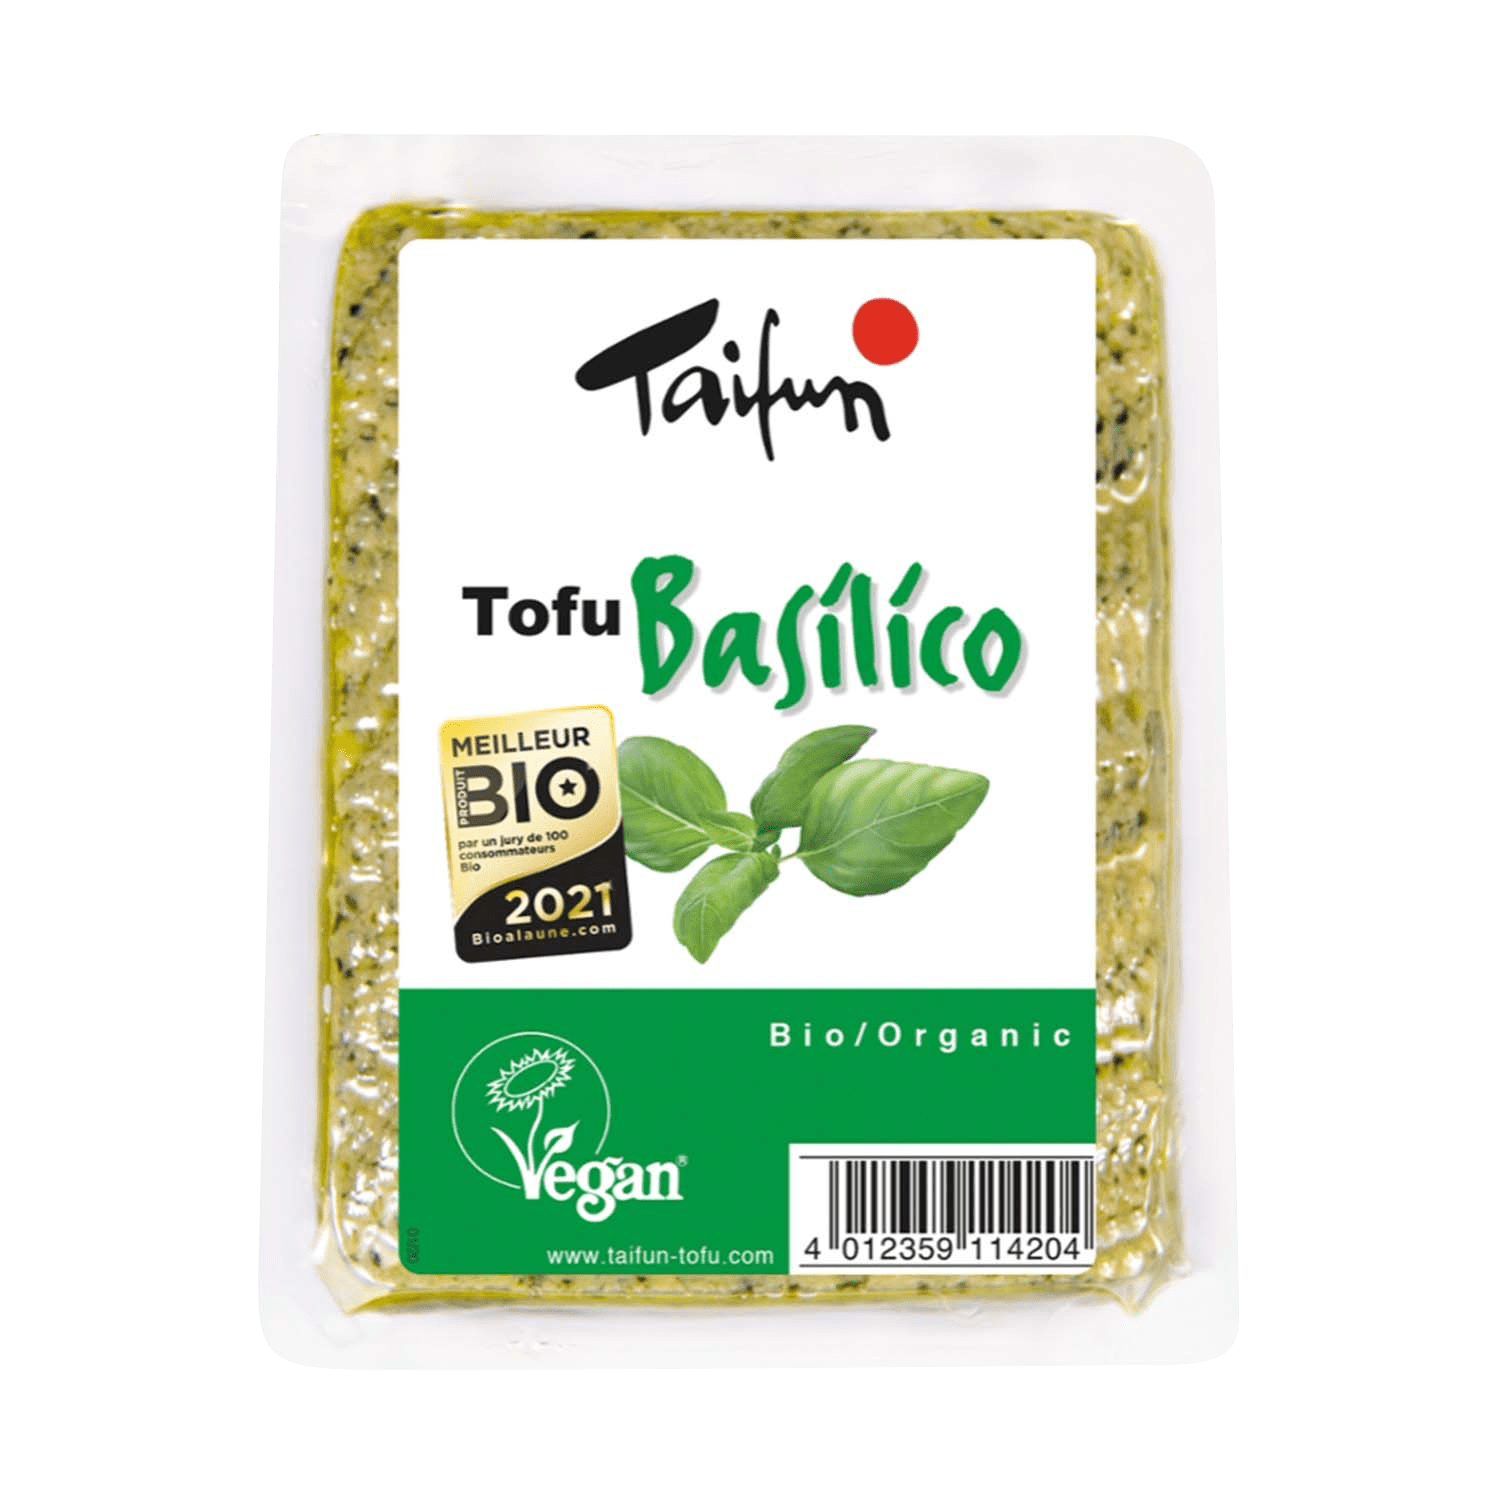 Tofu Basilico, BIO, 200g